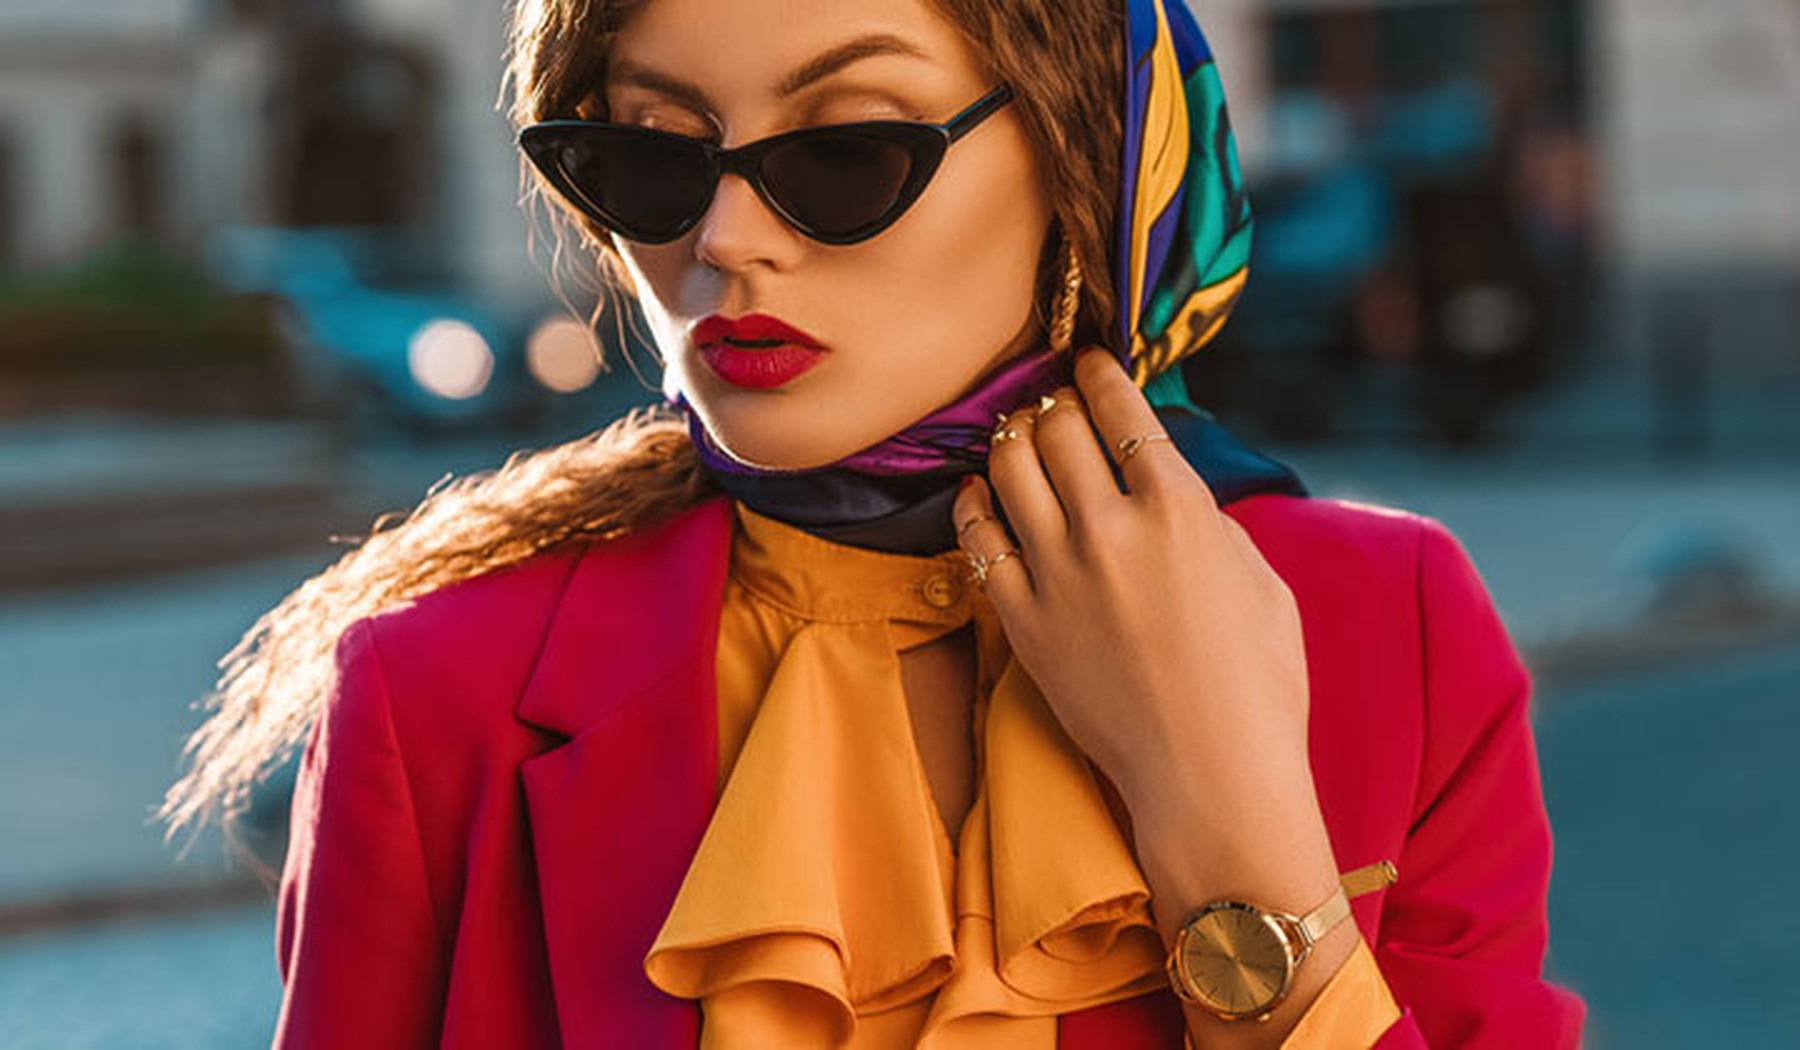 Mujer joven con un pañuelo retro en la cabeza, unas gafas de sol con forma triangular, labios pintados de rojo a juego de su blazer, camisa con cuello con volantes naranjas y accesorios dorados (reloj y anillos)